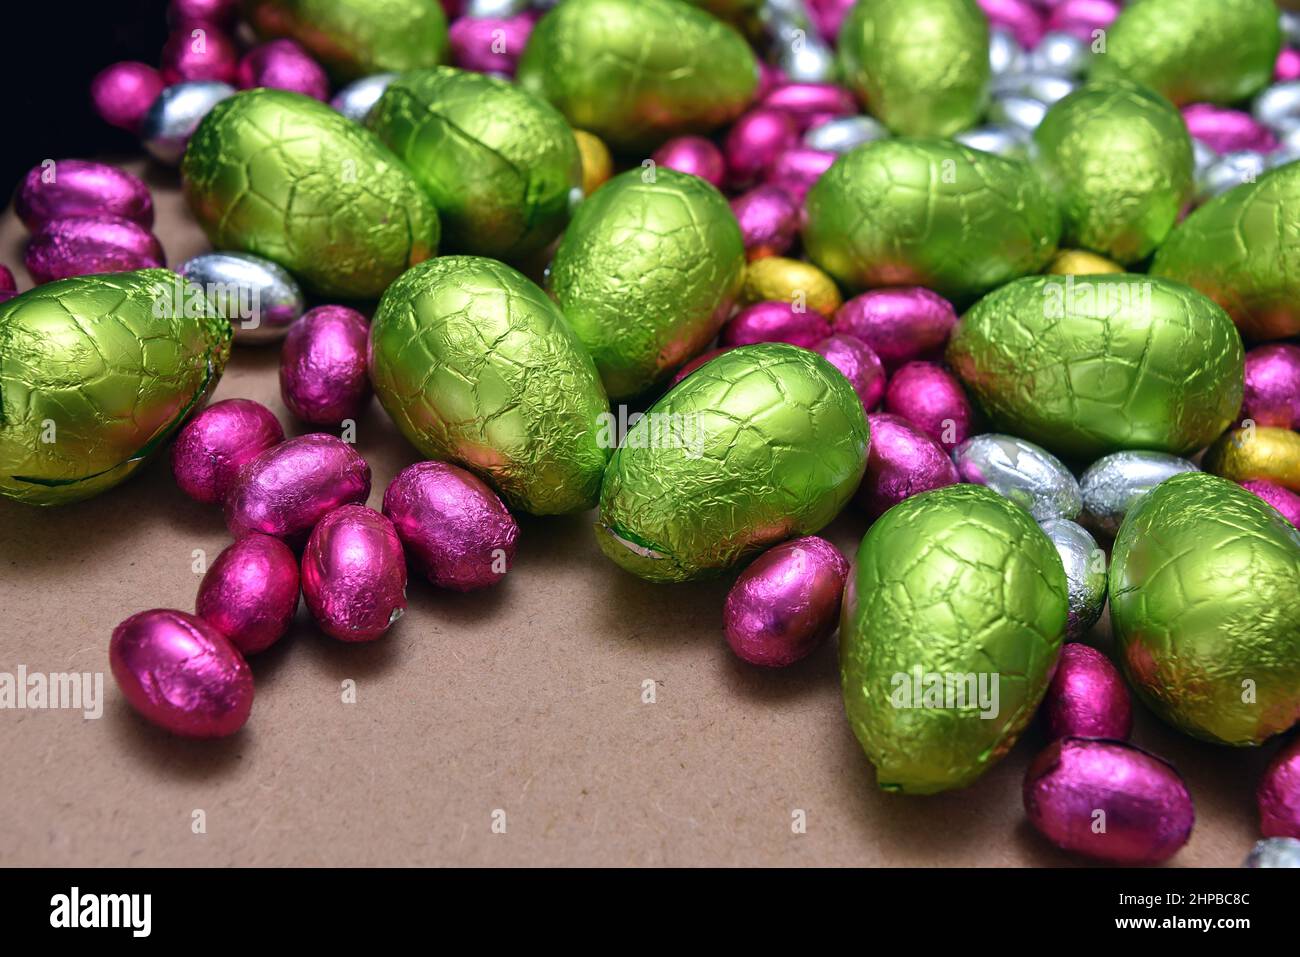 Un piccolo foglio rosa, giallo, verde e argento avvolse uova di pasqua al cioccolato con uova verdi di calce più grandi, su un fondo di legno chiaro. Foto Stock